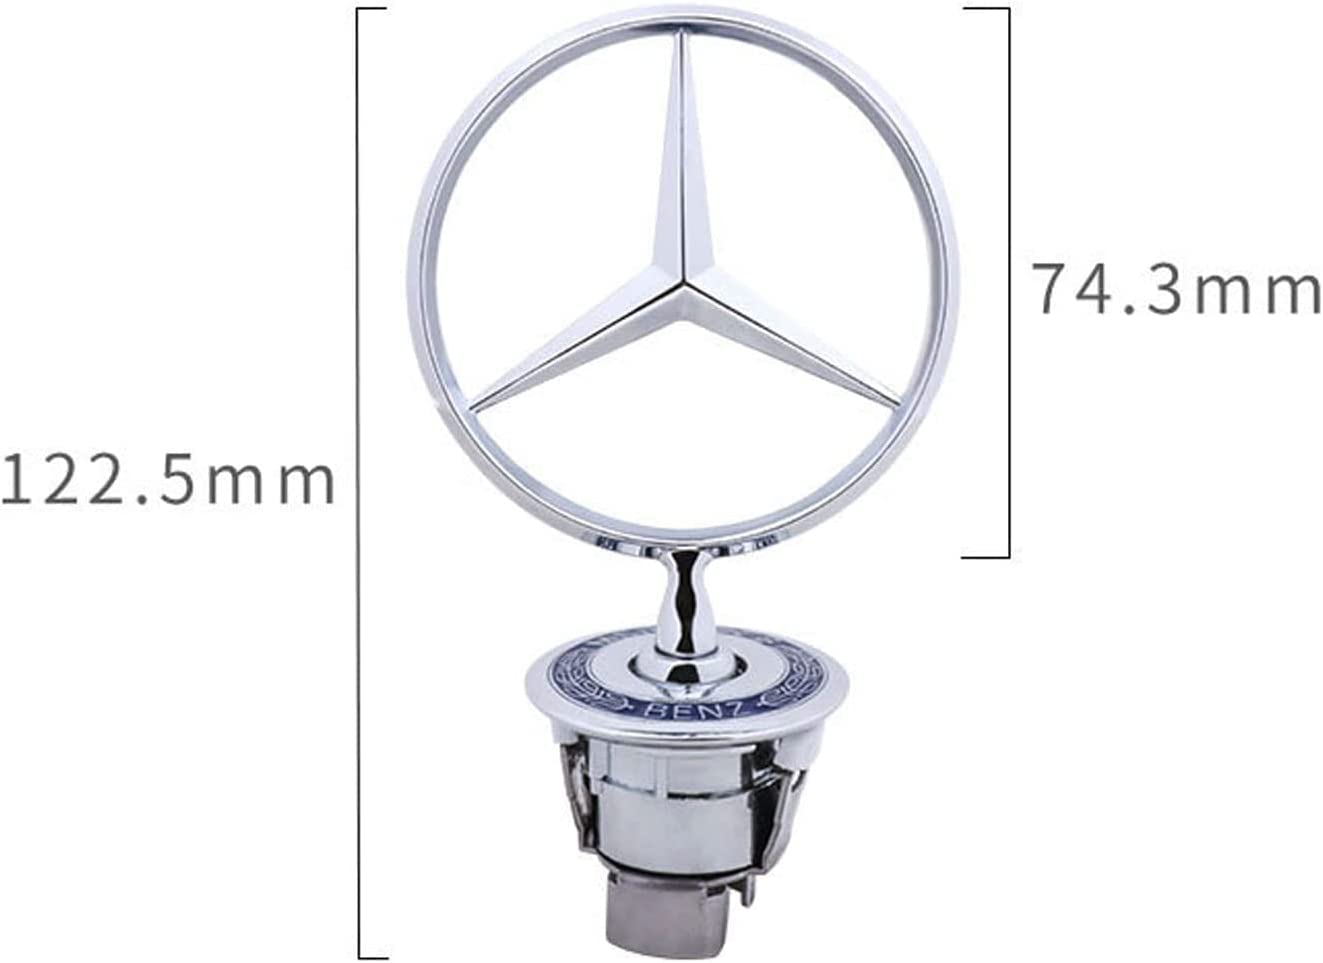 Mercedes-Benz hood badge star emblem